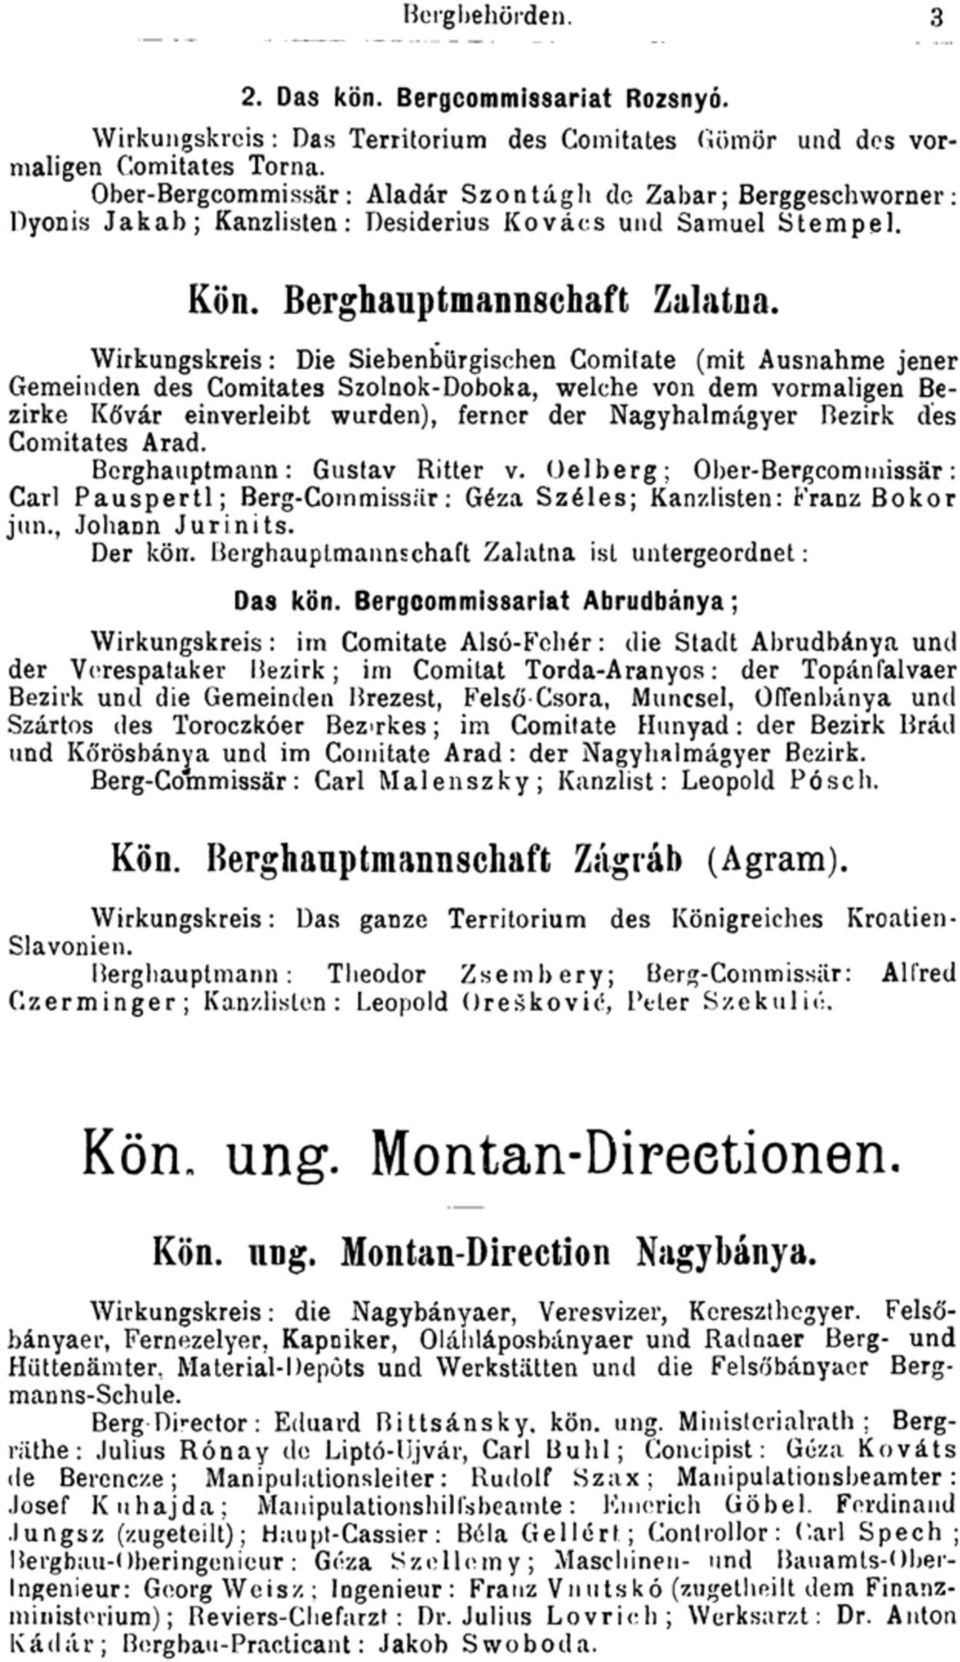 Wirkungskreis: Die Siebenbürgischen Comitate (mit Ausnahme jener Gemeinden des Comitates Szolnok-Doboka, welche von dem vormaligen Bezirke Kővár einverleibt wurden), ferner der Nagyhalmágyer Bezirk